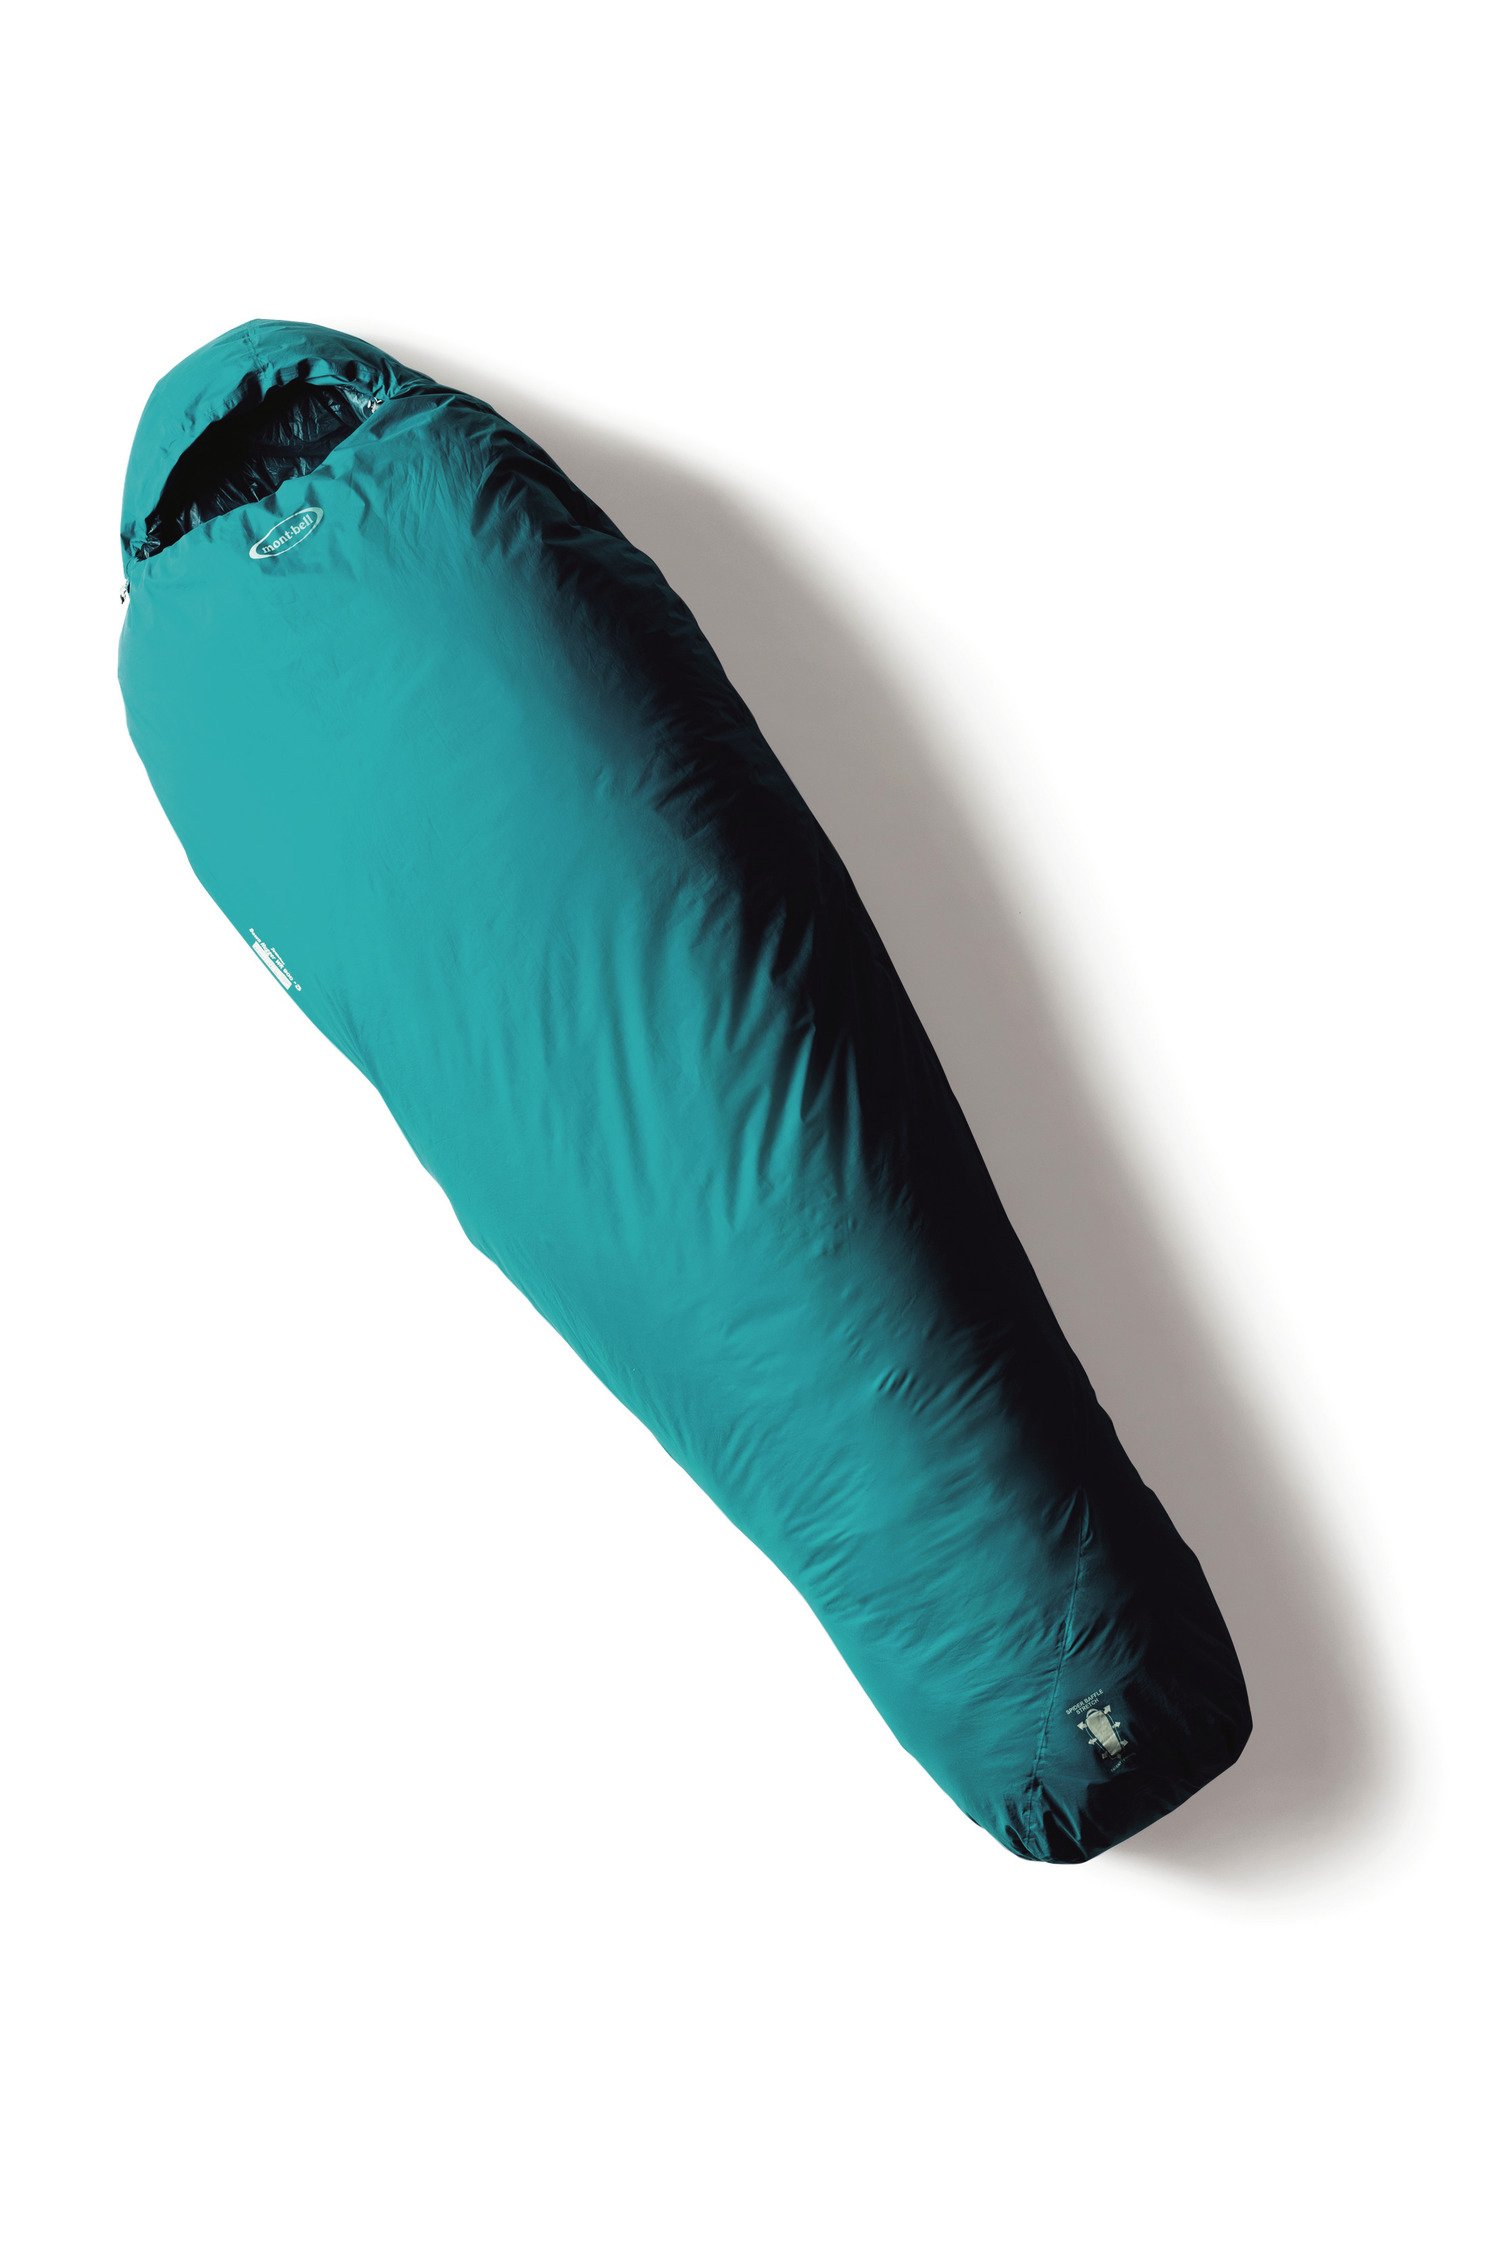 【フルスペック】寝袋 シュラフ ダウン 冬用 -15℃ コールマン モンベル